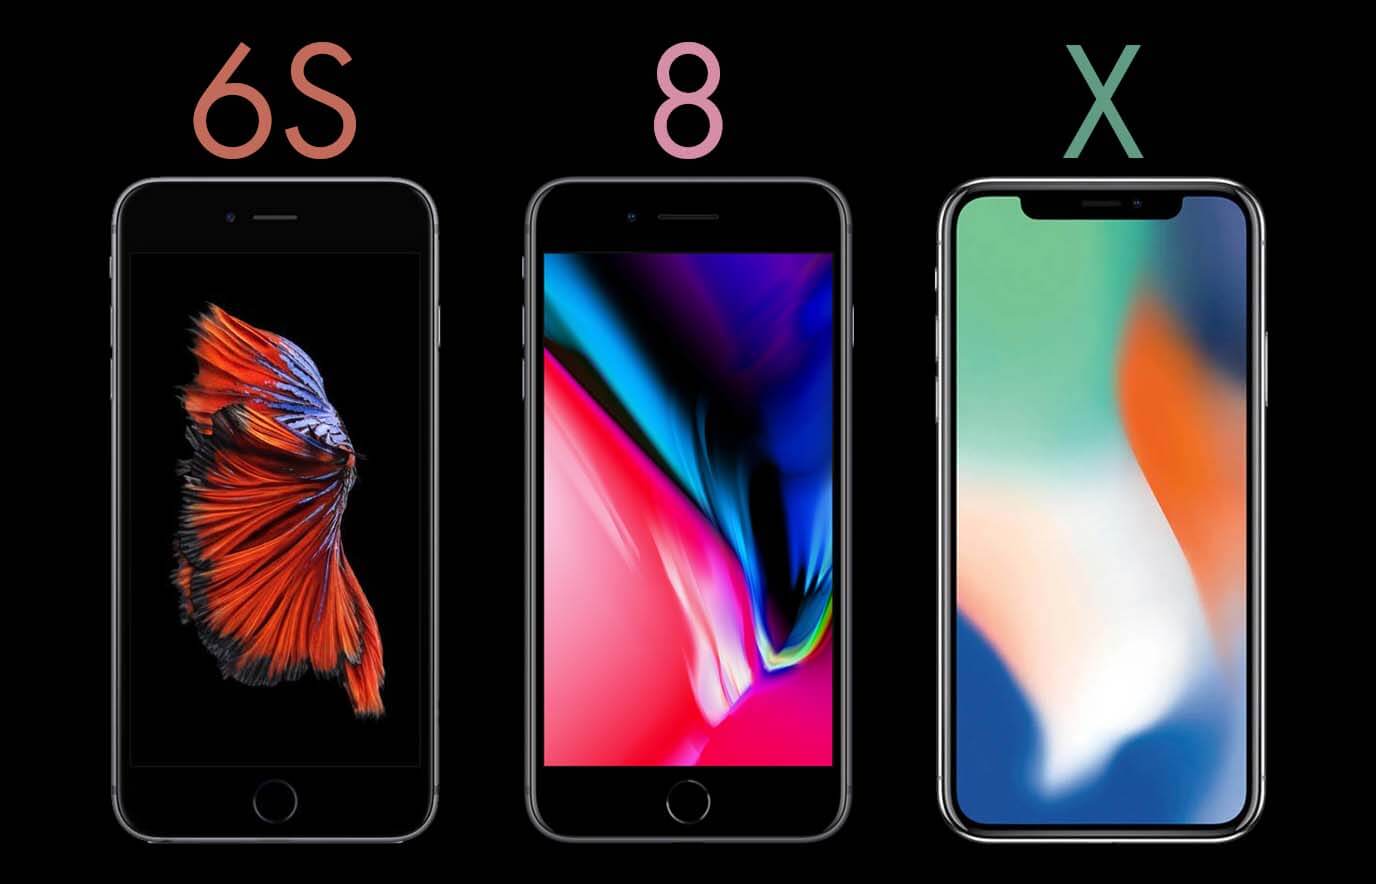 Iphone 6s Iphone 8 En De Iphone X 5 Vergelijkingen